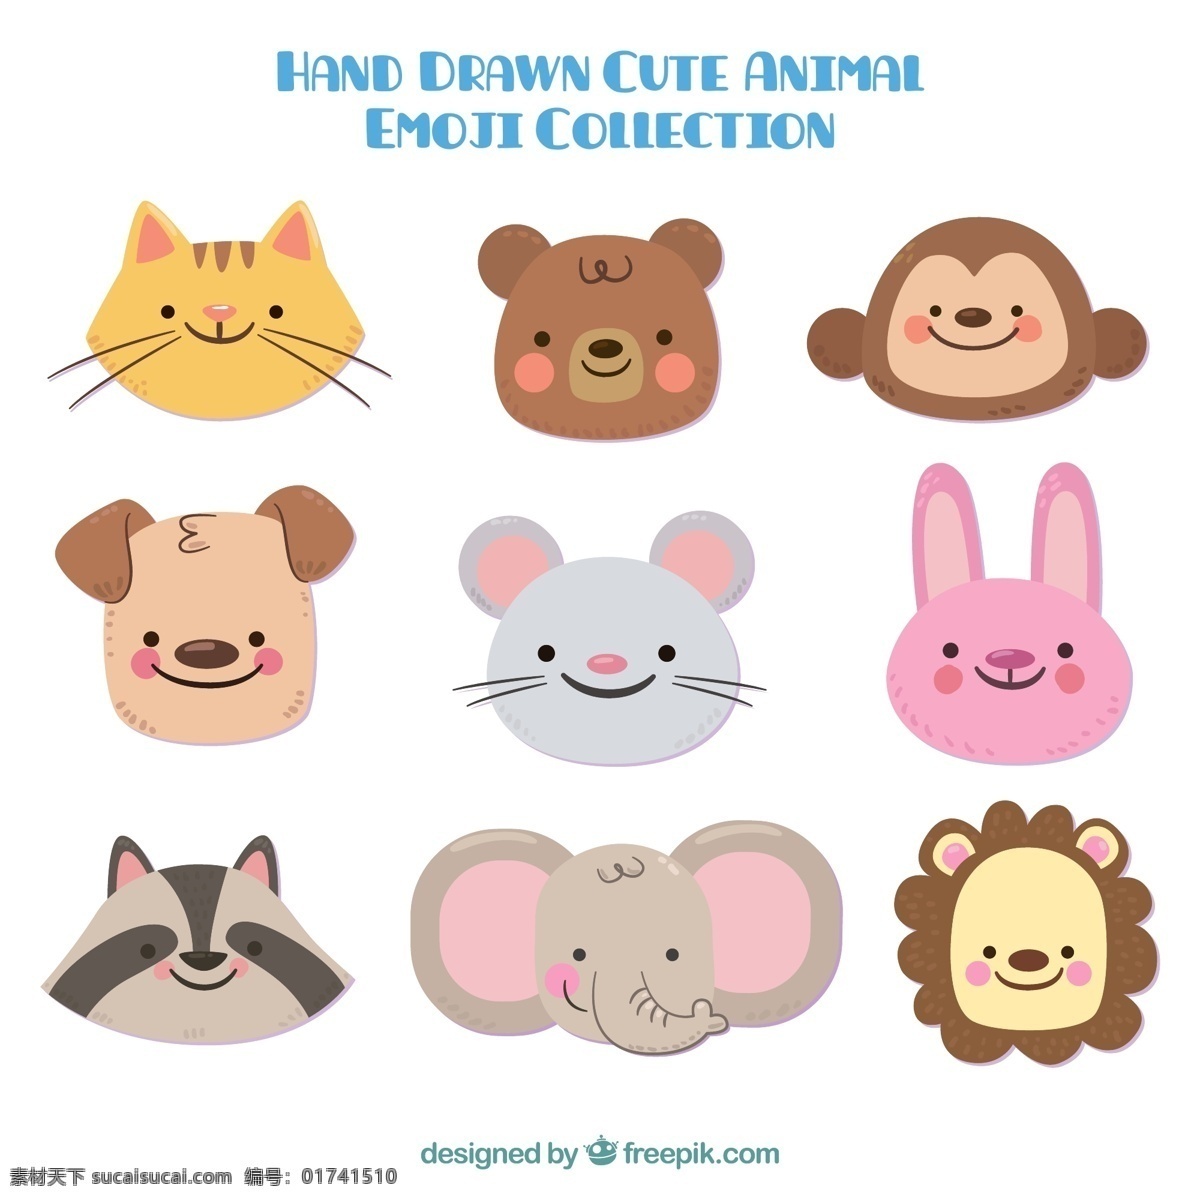 组 简约 风格 动物 表情 可爱 卡通 卡哇伊 矢量素材 小动物 创意设计 创意 元素 生物元素 动物元素